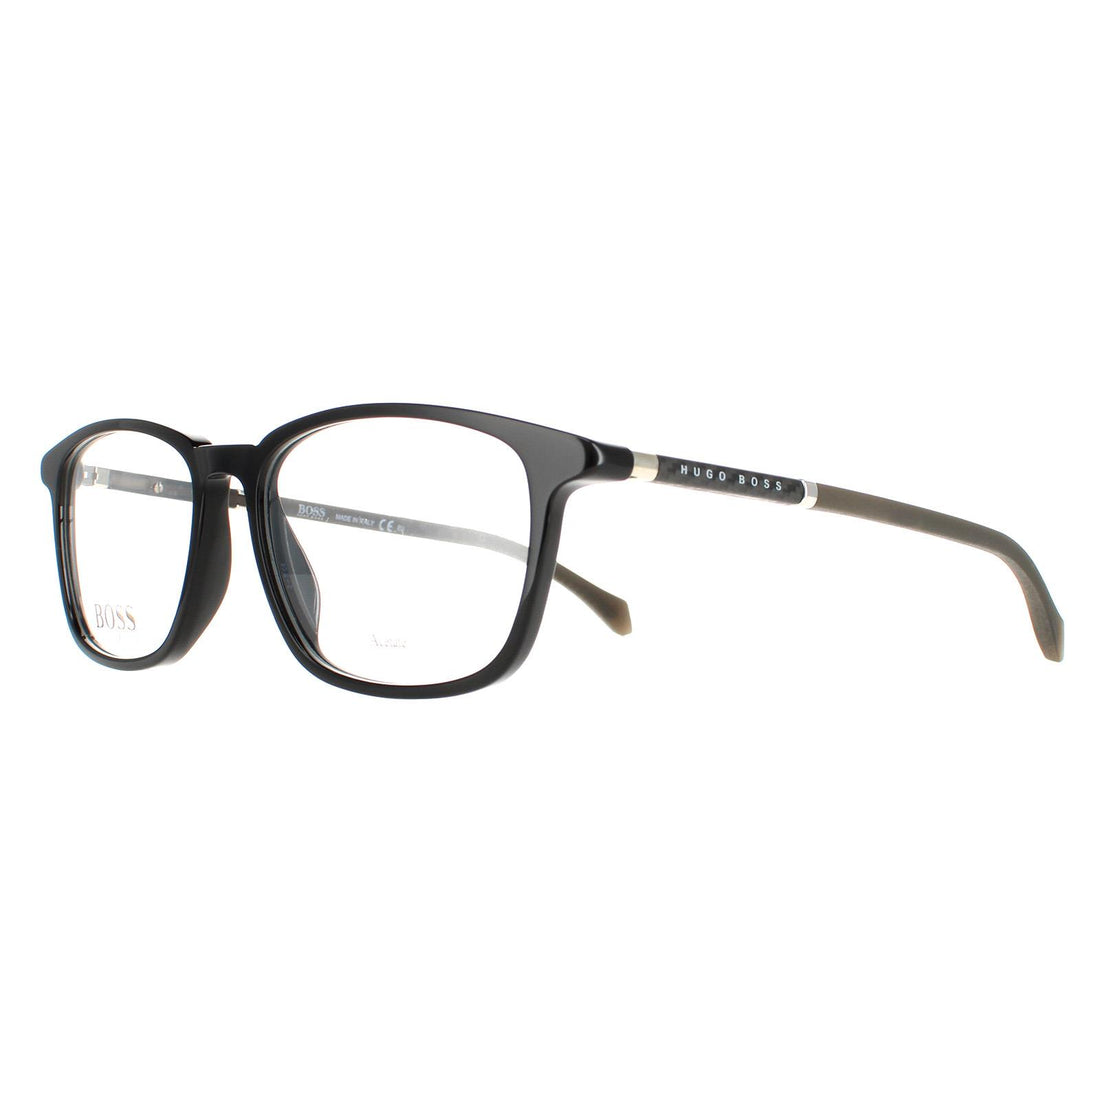 Hugo Boss BOSS 1133 Glasses Frames